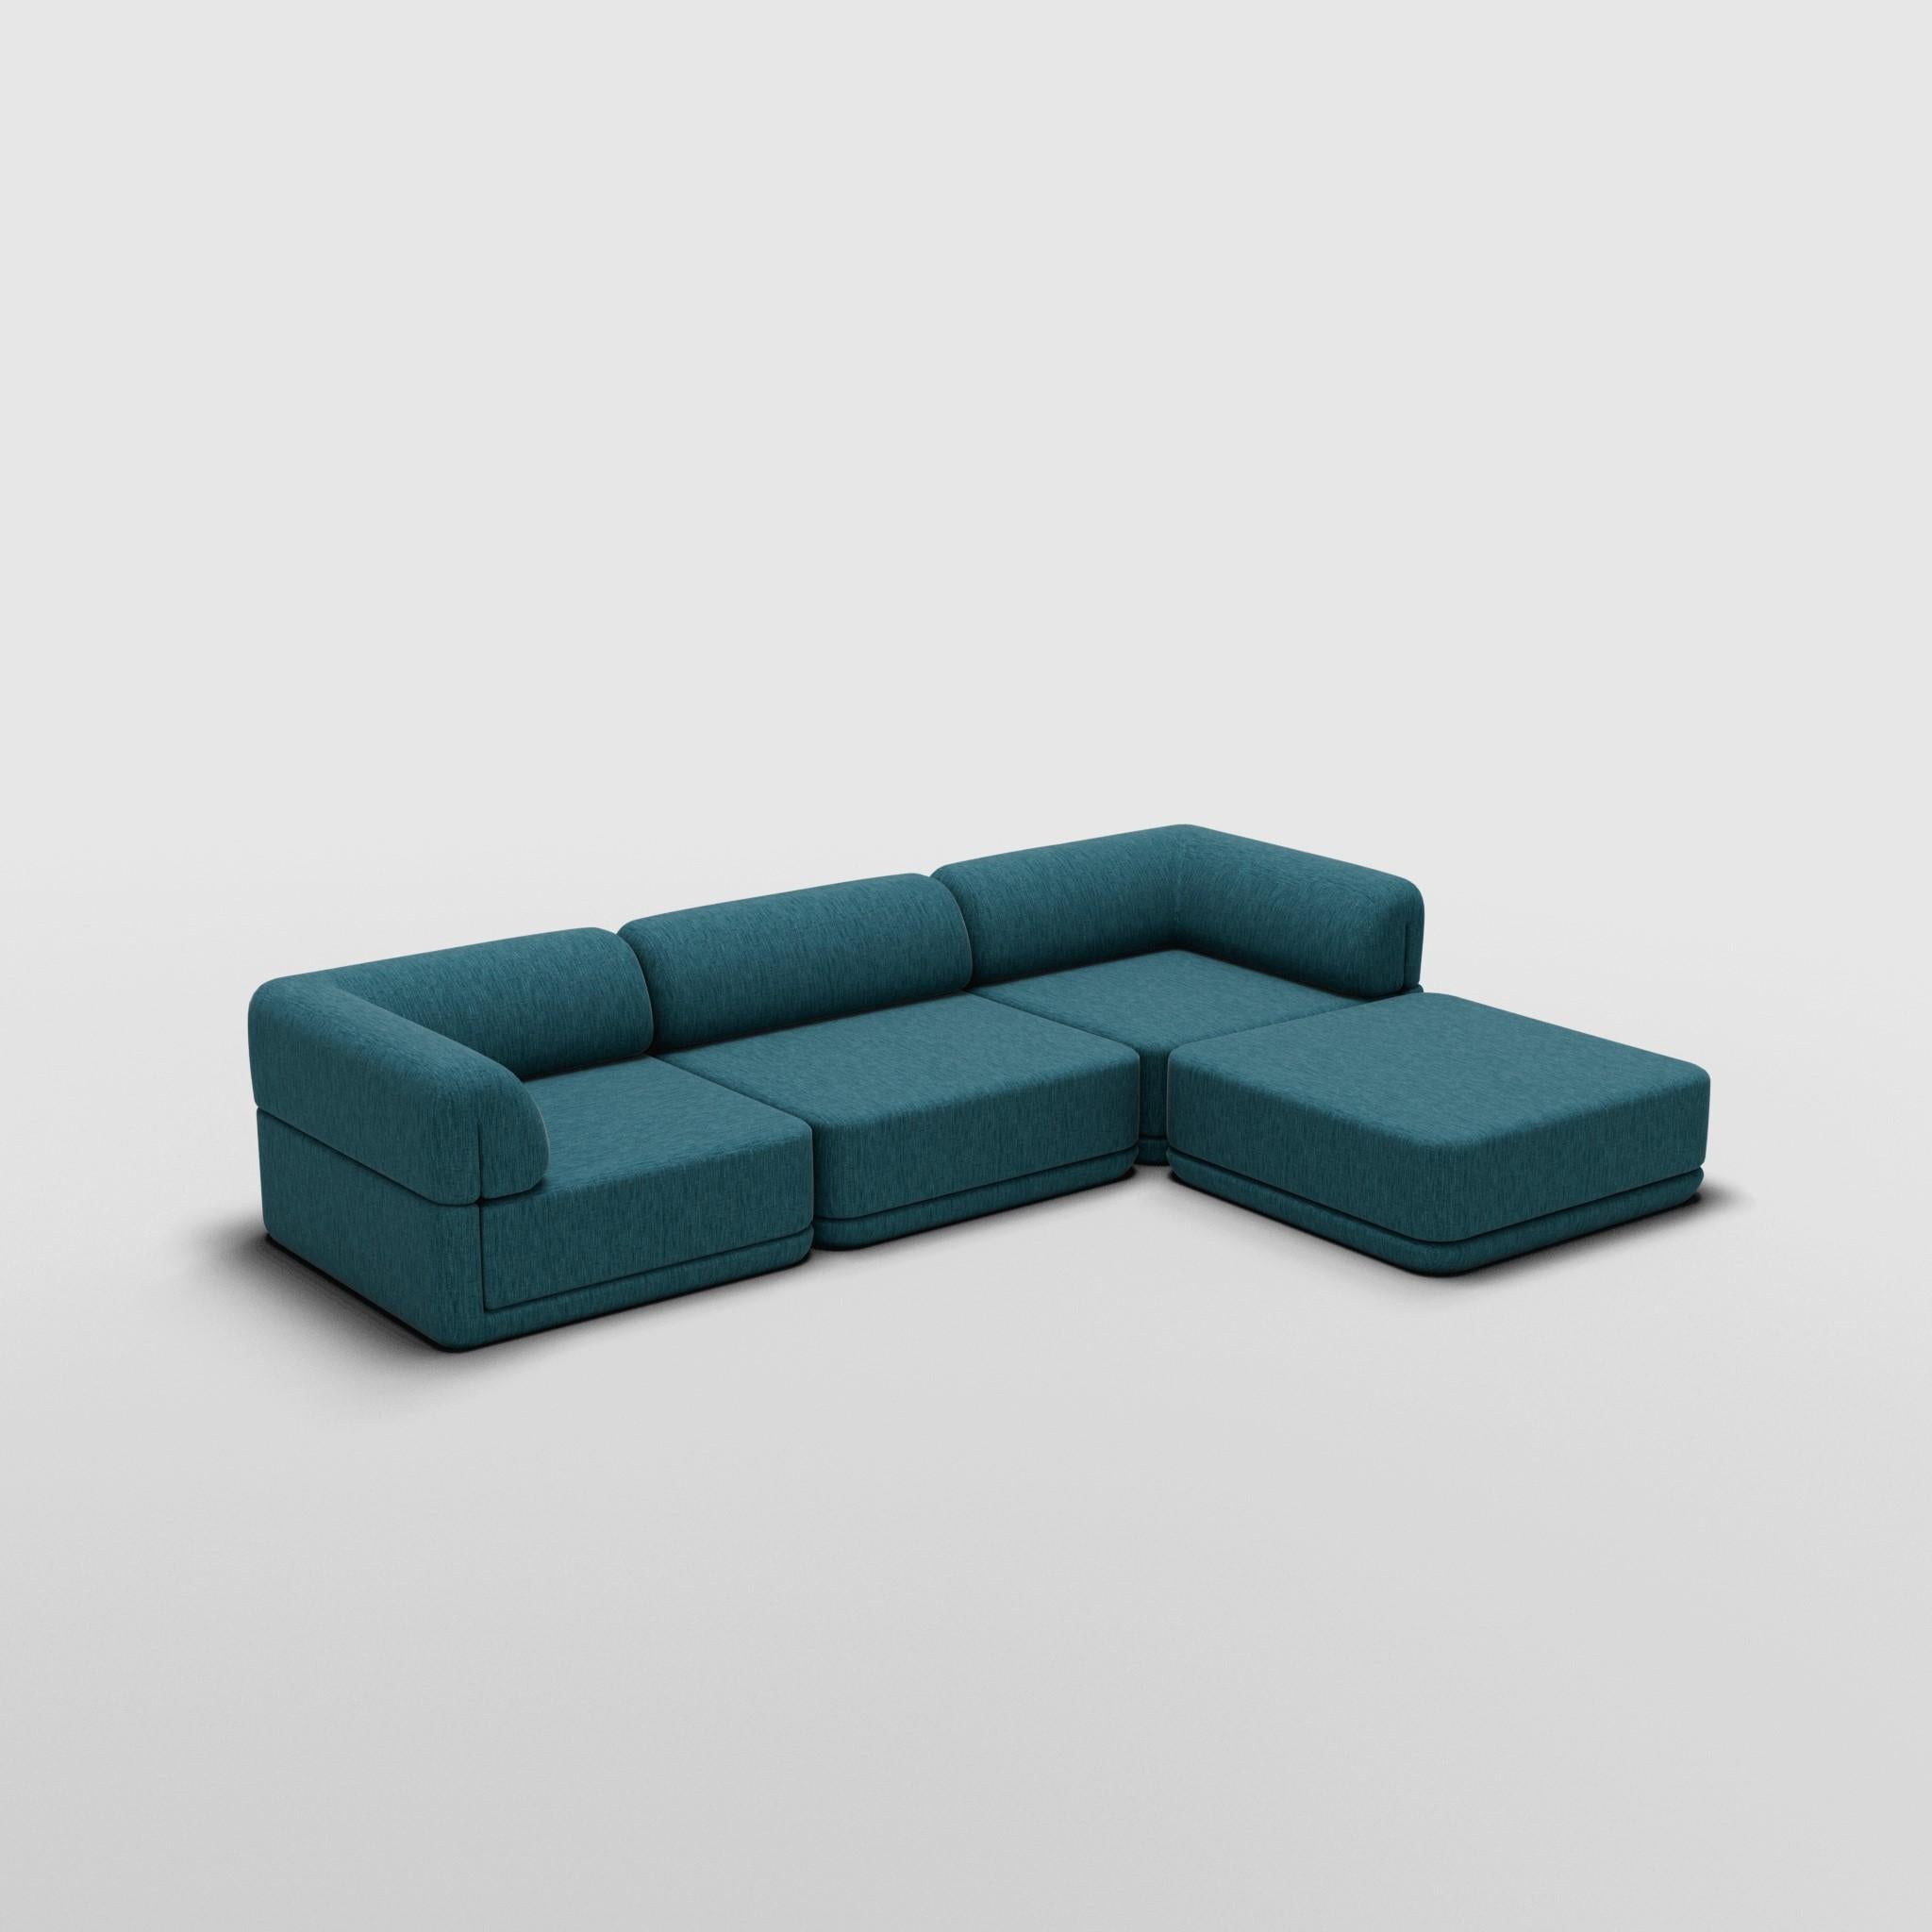 Canapé Lounge avec Ottoman - Inspiré par les meubles de luxe italiens des années 70

Découvrez le canapé Cube, où l'art rencontre l'adaptabilité. Son design sculptural et son confort personnalisable créent des possibilités infinies pour votre espace